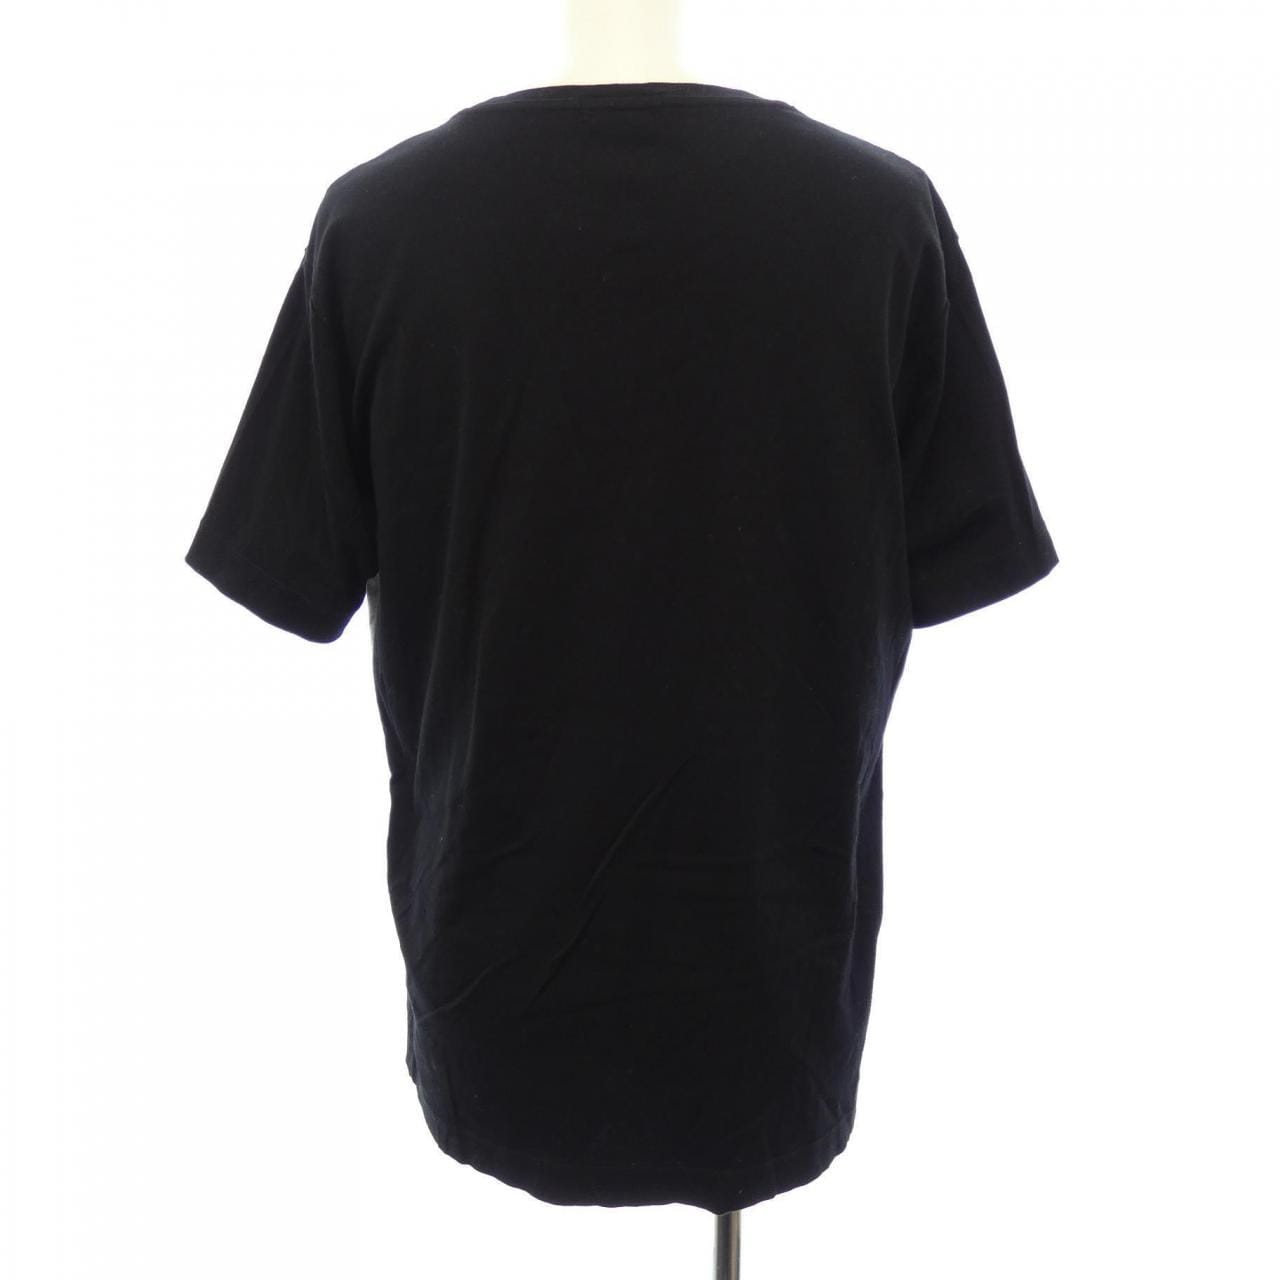 Black Label Crestbridge BLACK LABEL CRESTBRI T-shirt